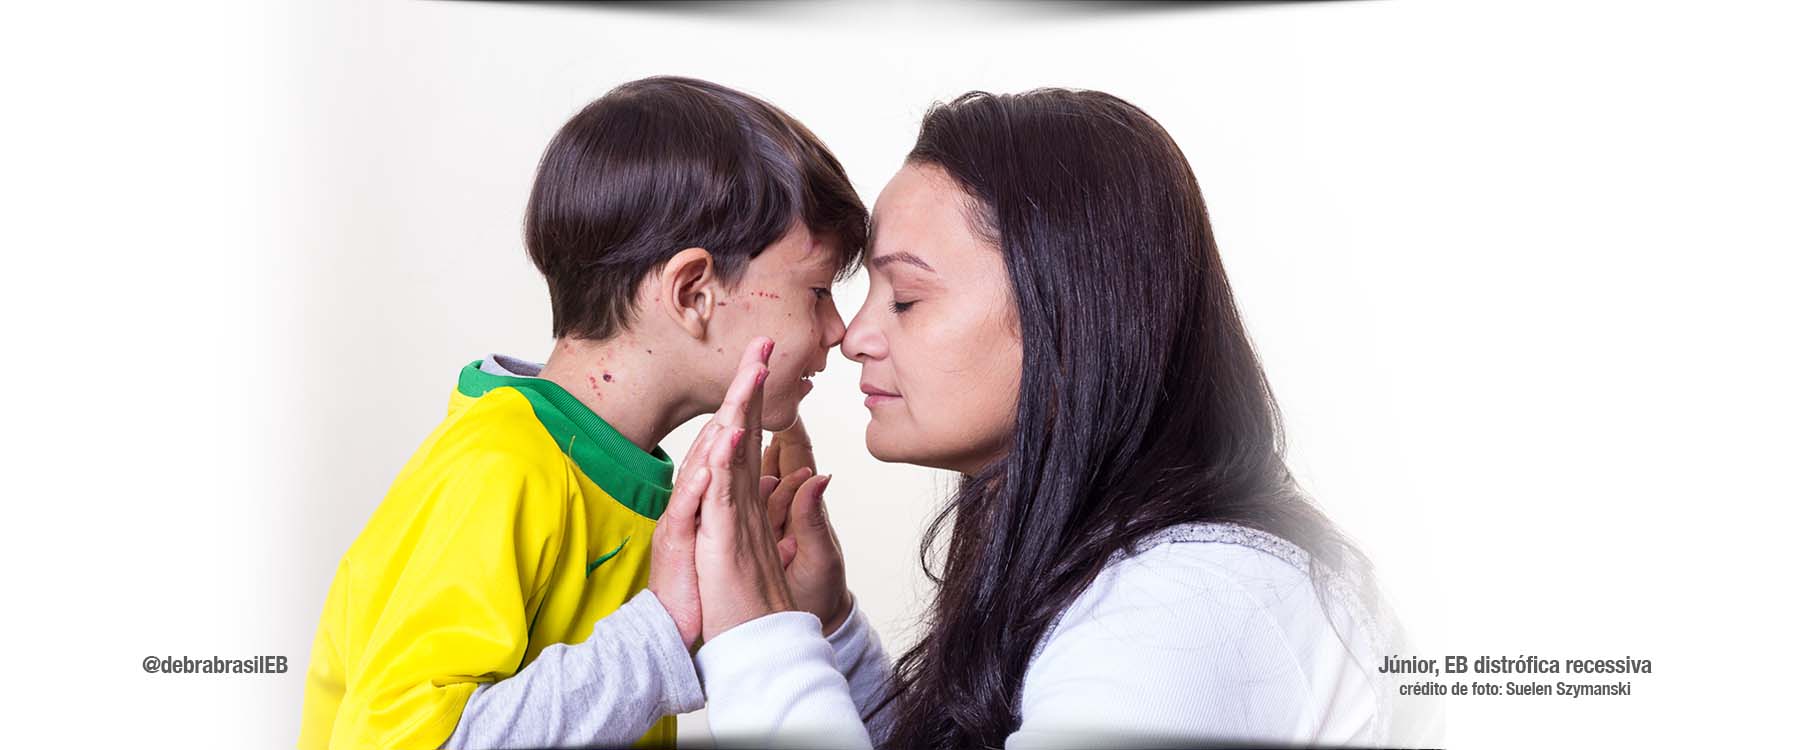 Júnior, criança com epidermólise bolhosa (EB) distrófica recessiva, veste a camisa da seleção brasileira ao lado da mãe